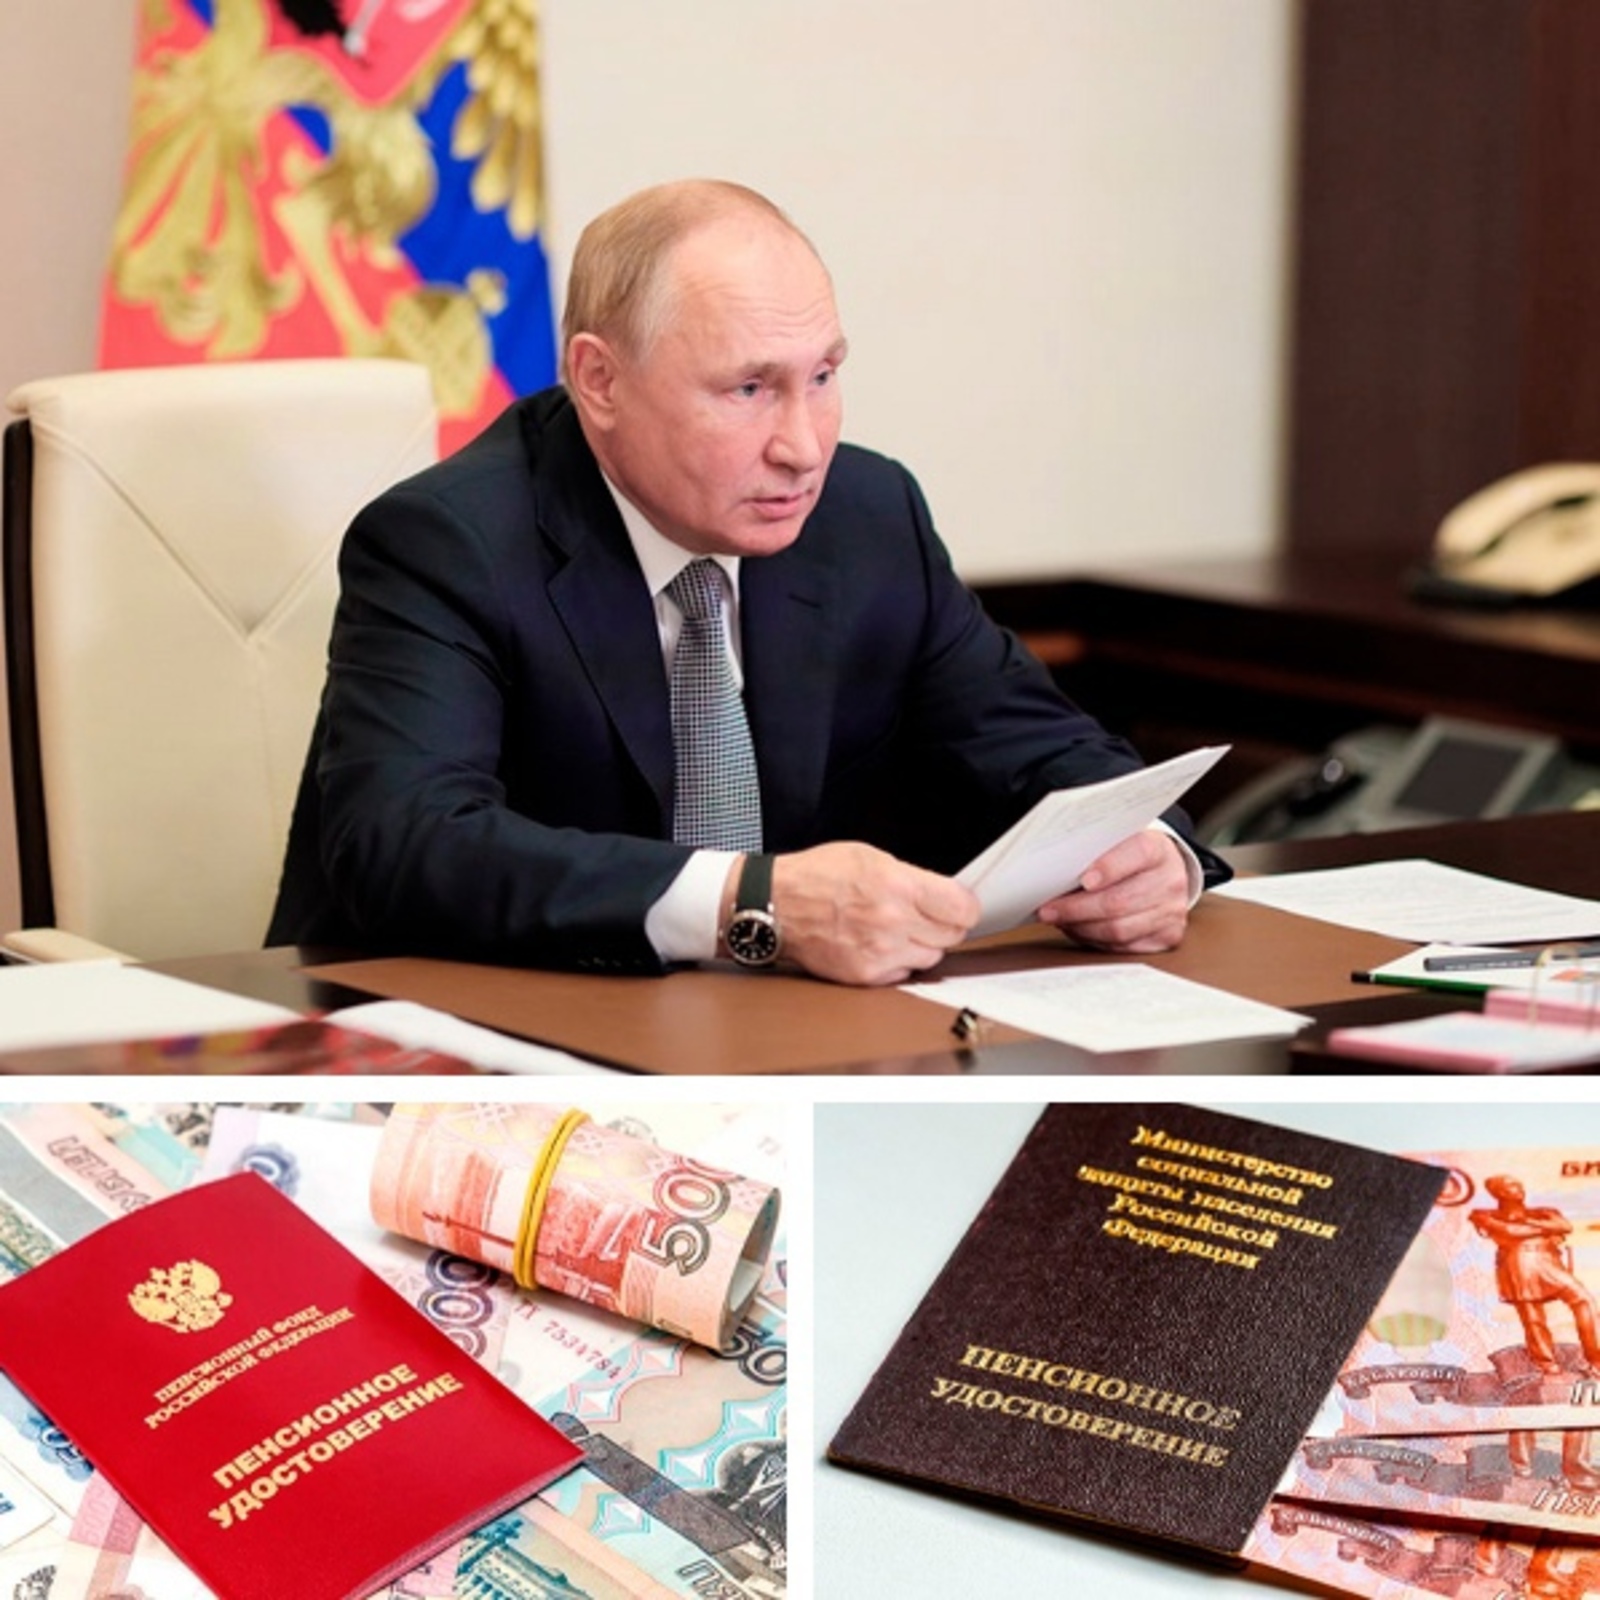 Рассчитать новый размер своей пенсии после указа Путина совсем не сложно